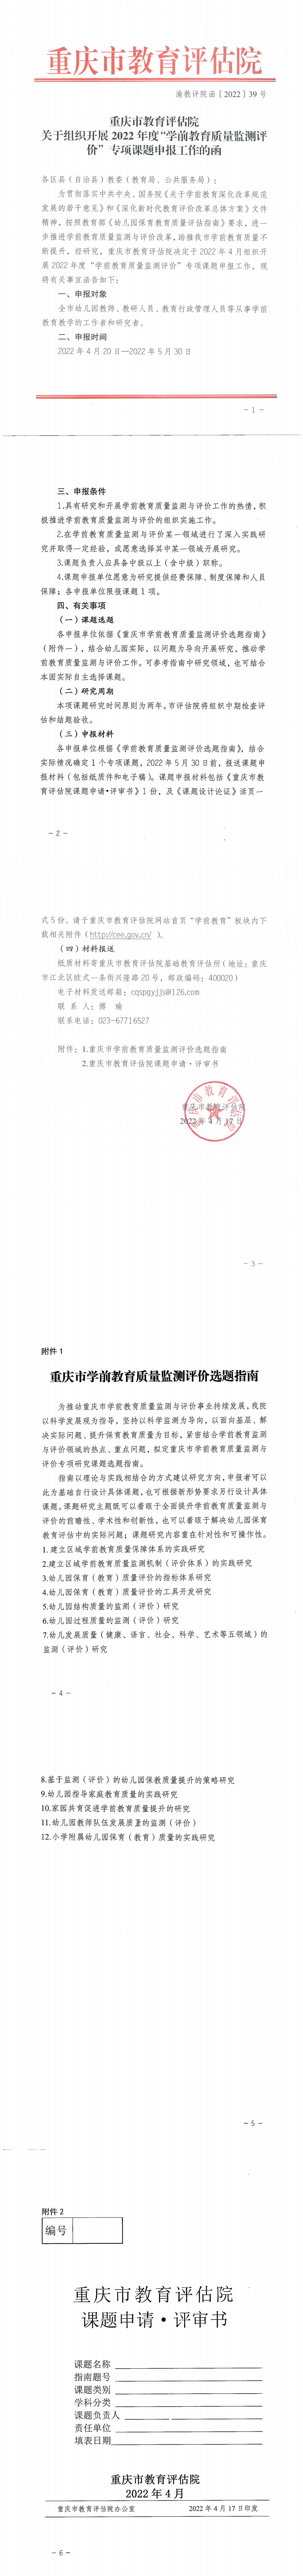 重庆市教育评估院关于组织开展2022年度“学前教育质量监测评价“专项课题申报工作的函_0.png